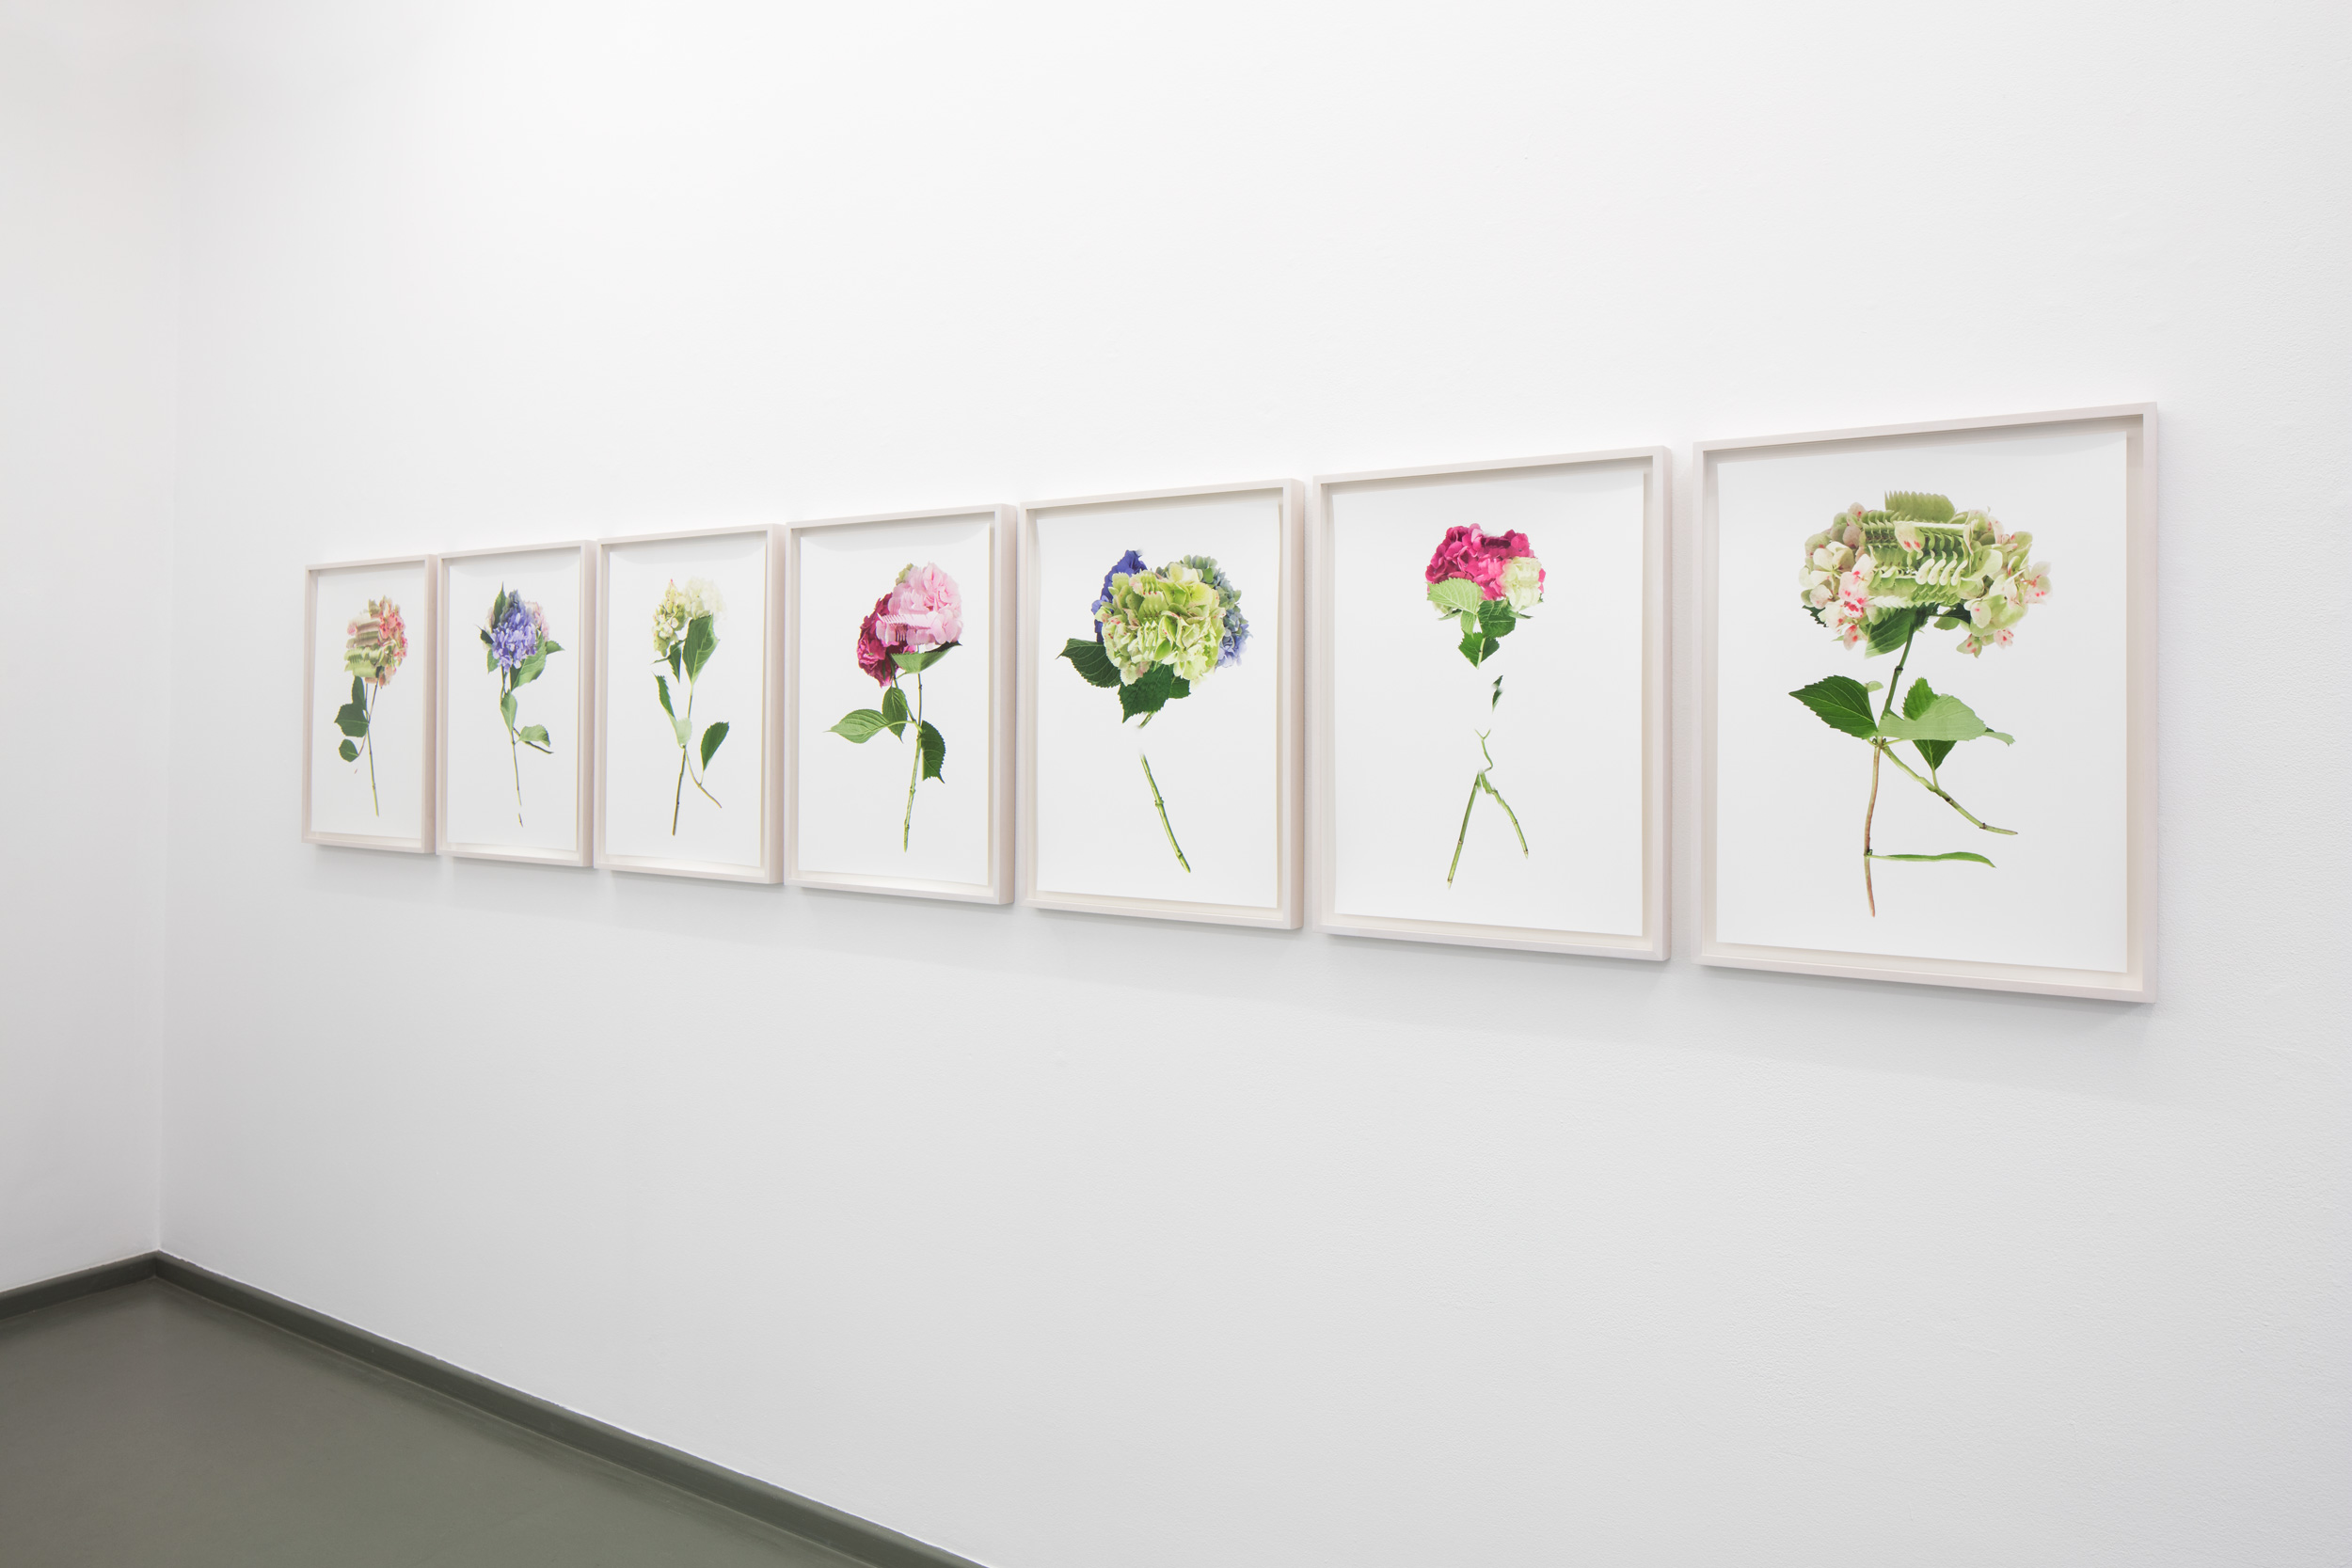  exhibition view RANDOM FLOWERS, Rasche Ripken, 2018 